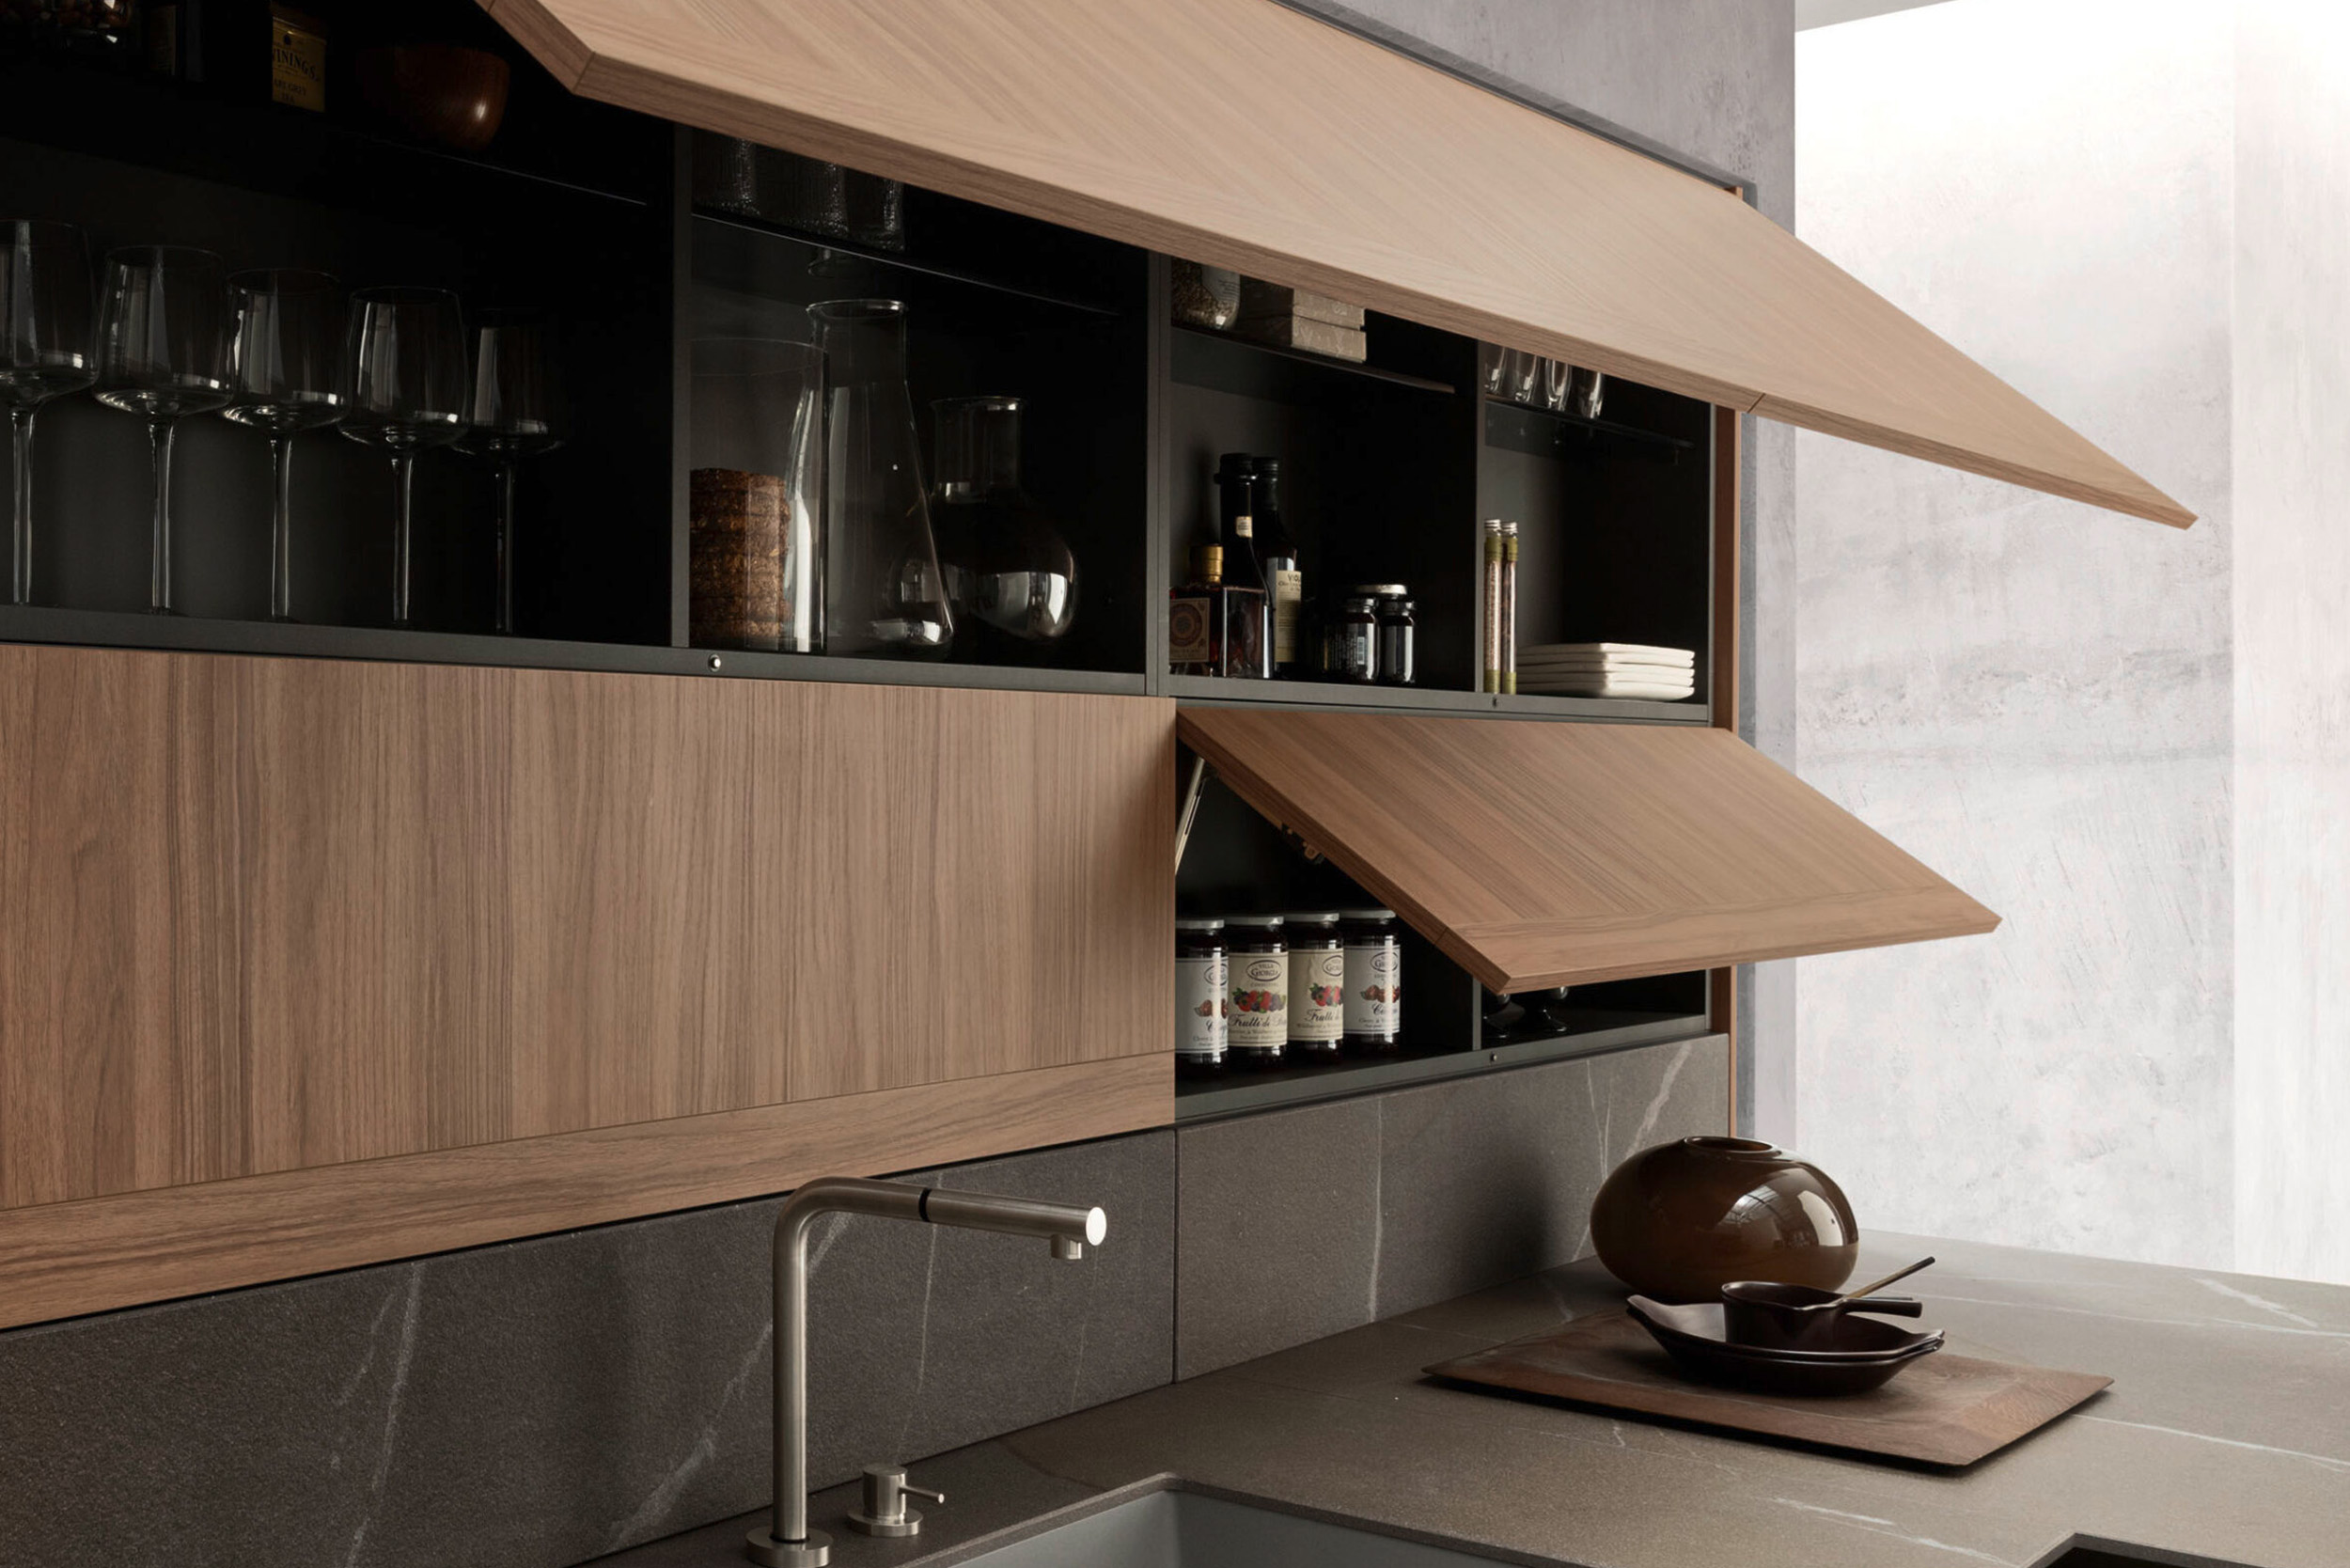 Premium luxury kitchen cabinets